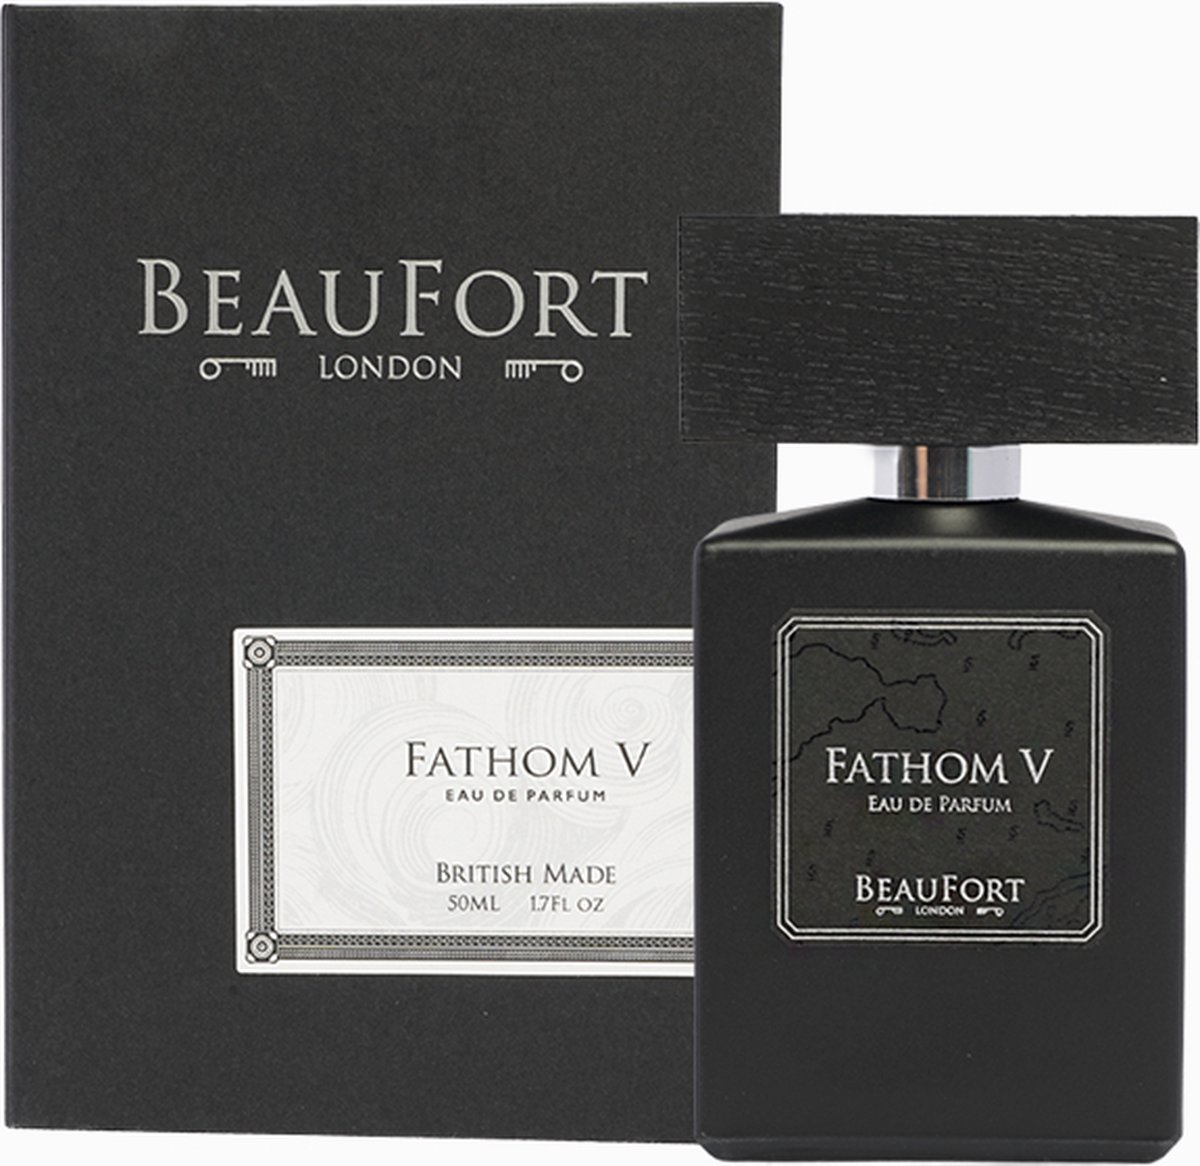 Beaufort London - Fathom V Eau de Parfum - 50 ml - Unisex